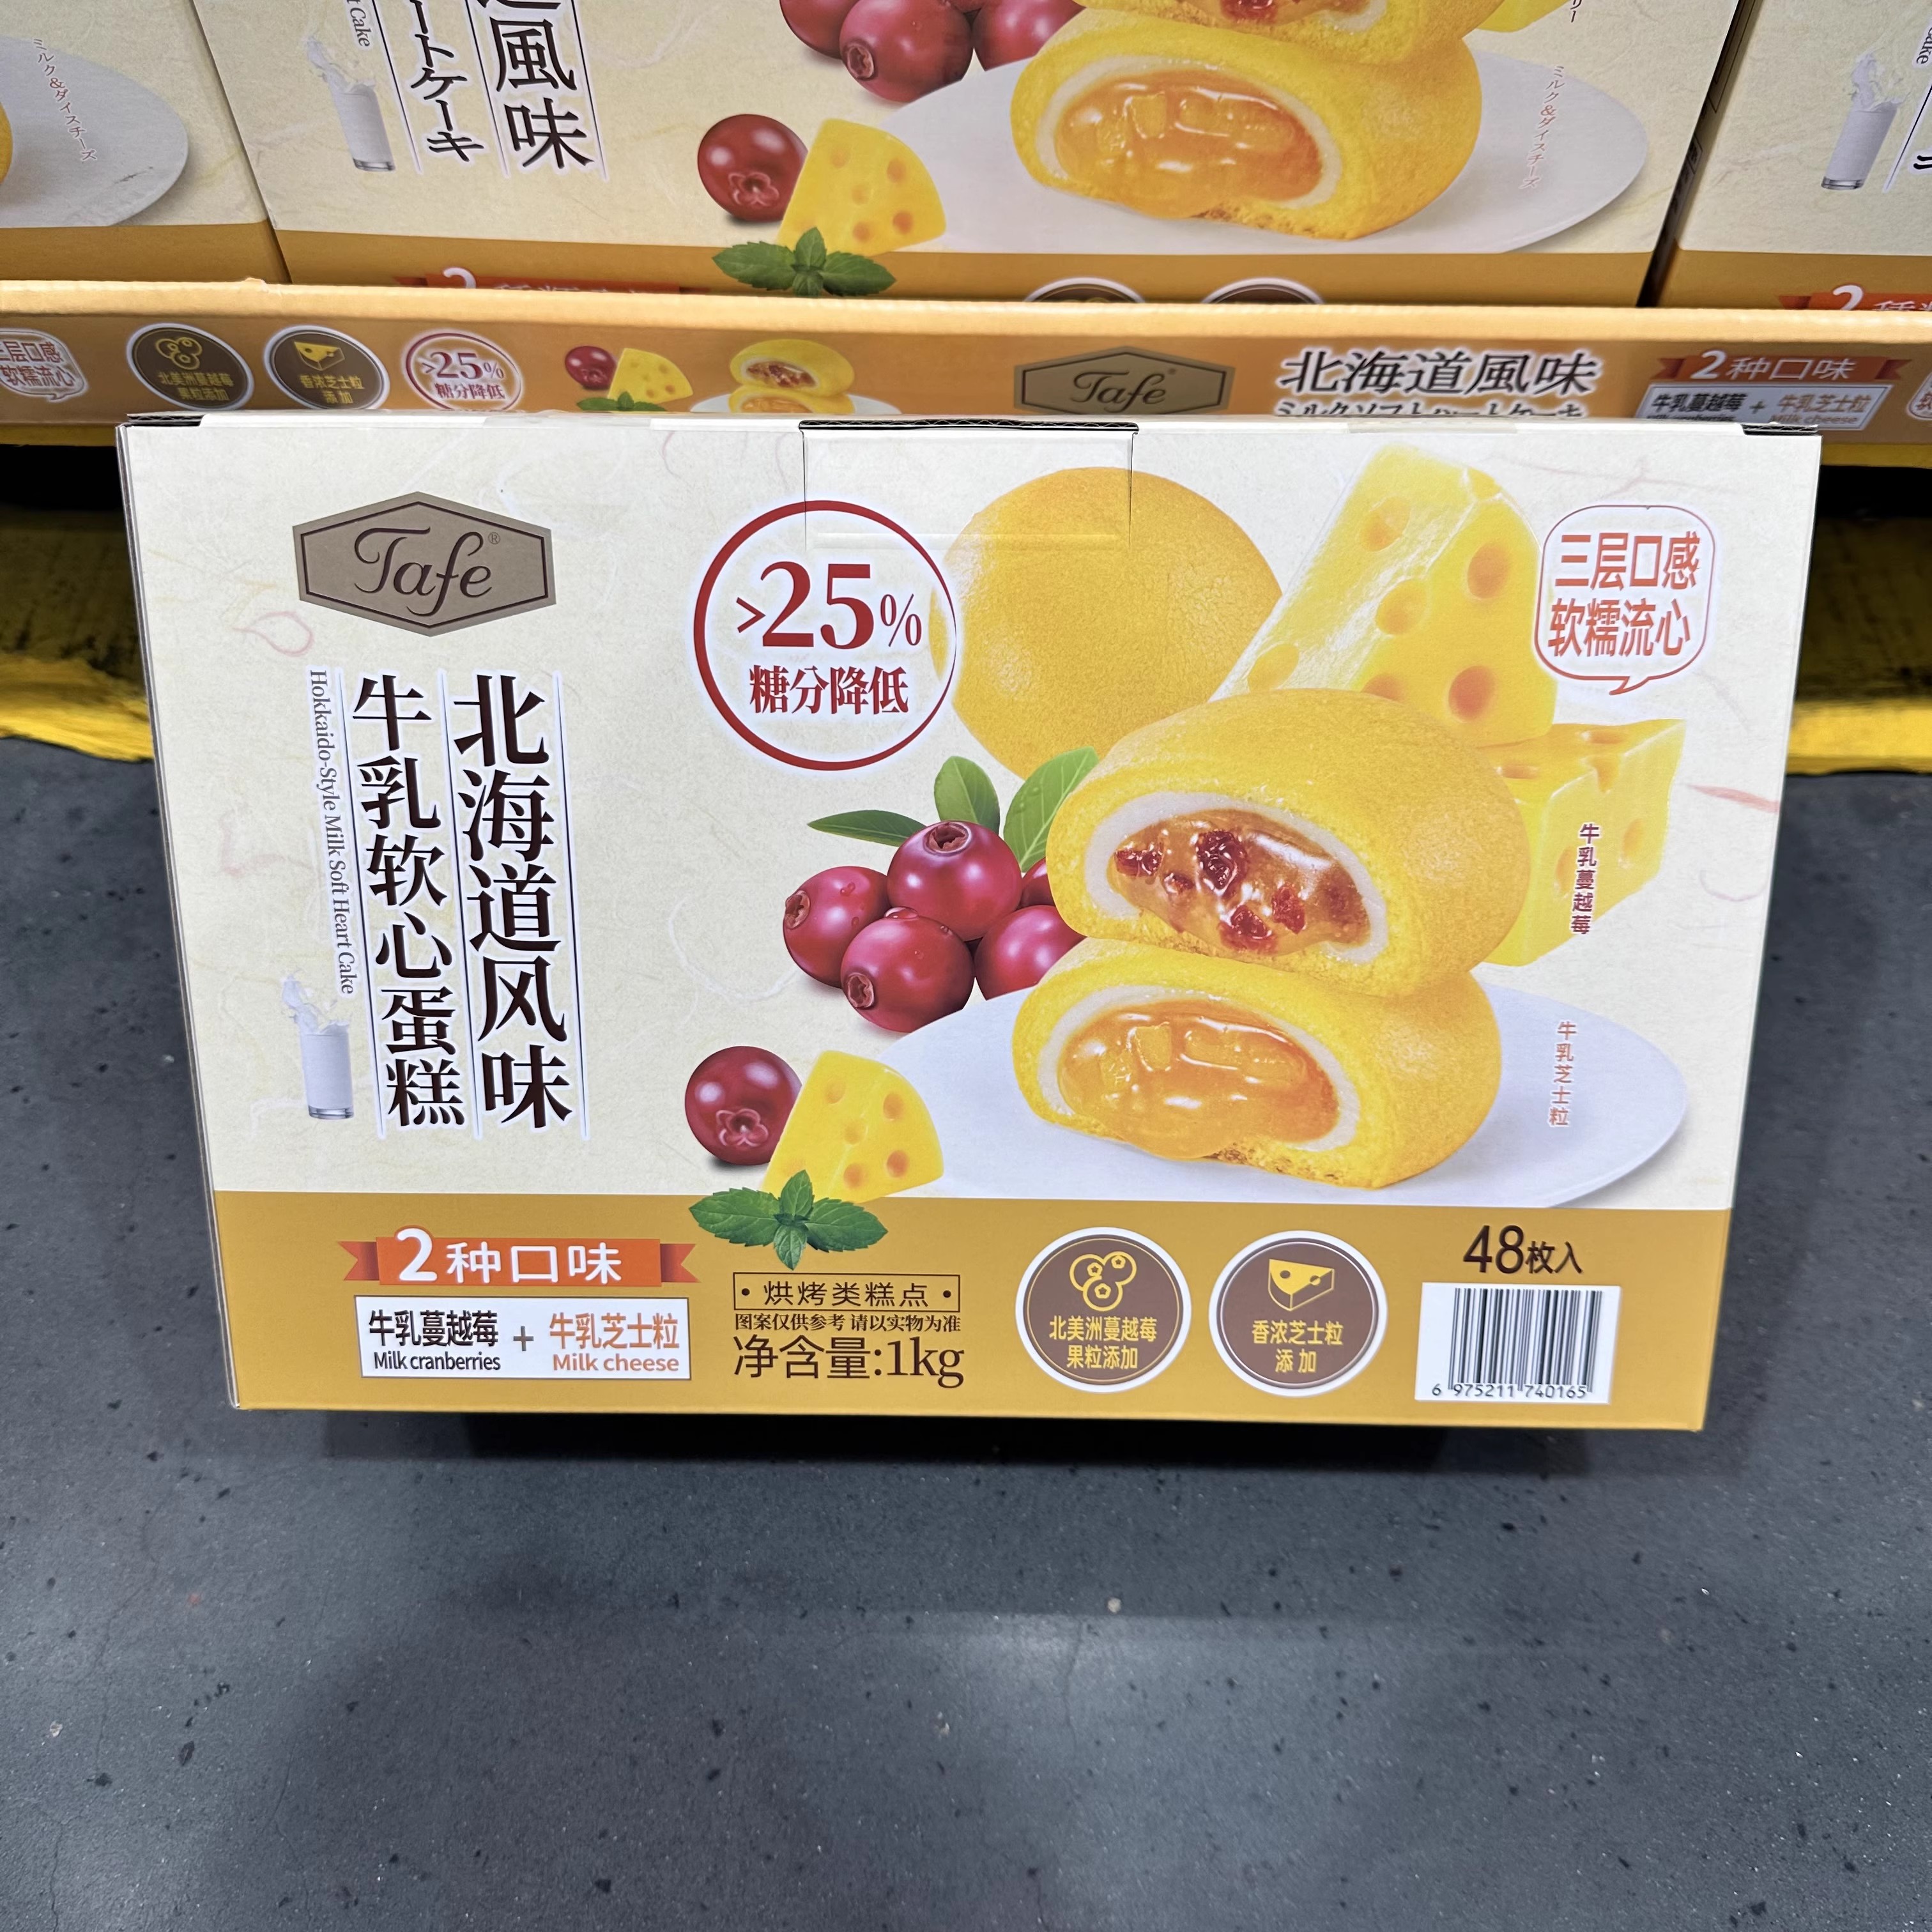 豆豆S山M姆代购M北海道风味牛乳软心蛋糕1000g下午茶早餐营养零食